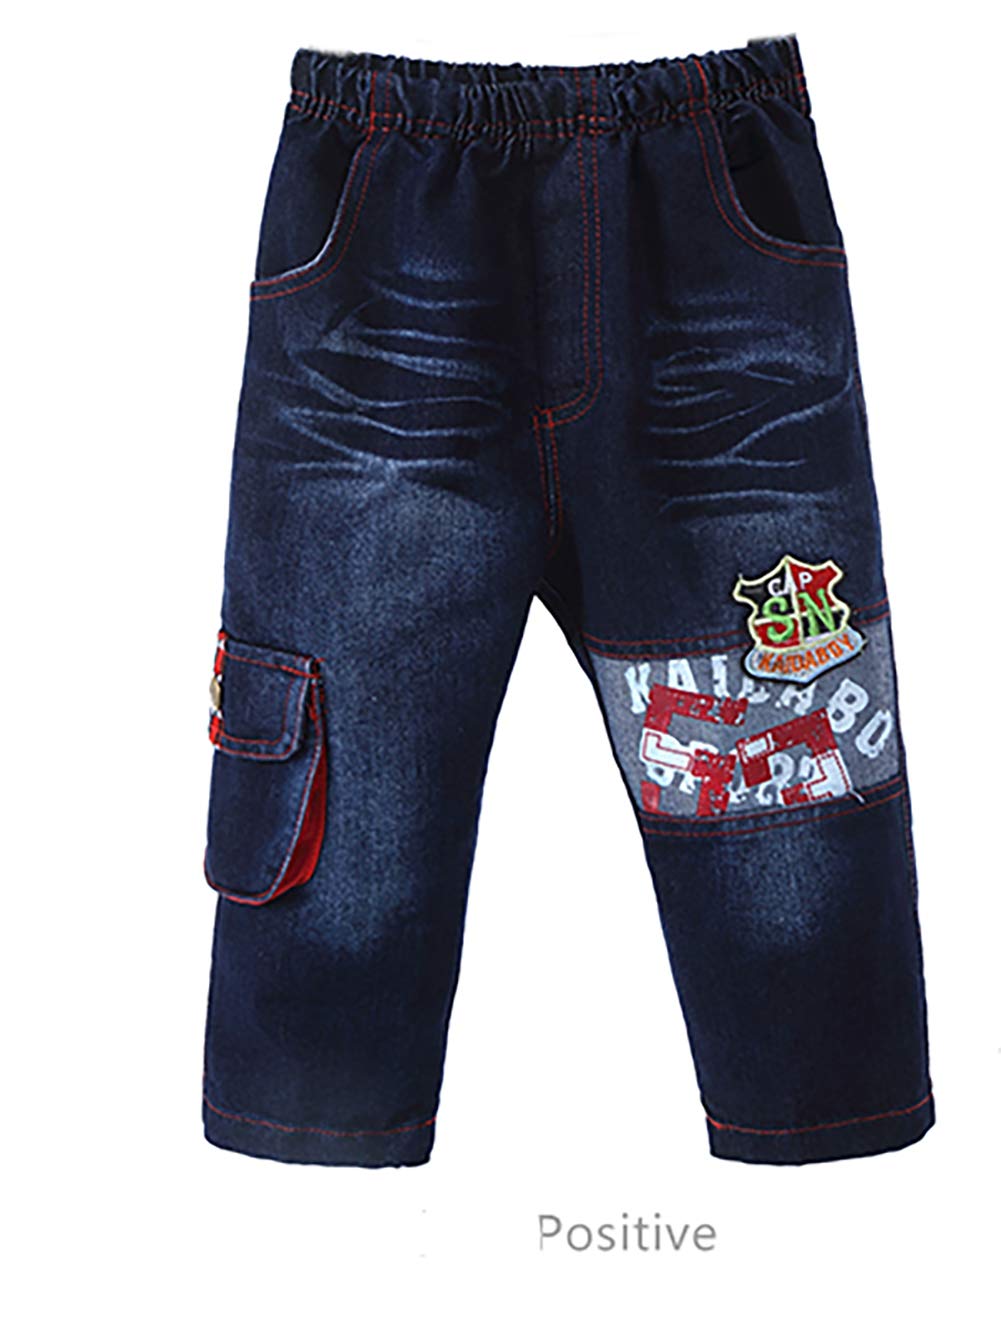 Yao 1T-5T Toddler Boy Clothes,Autumn Baby Boy 3pcs Clothing Sets Denim Vest Cotton Hoodies Jeans for Kids